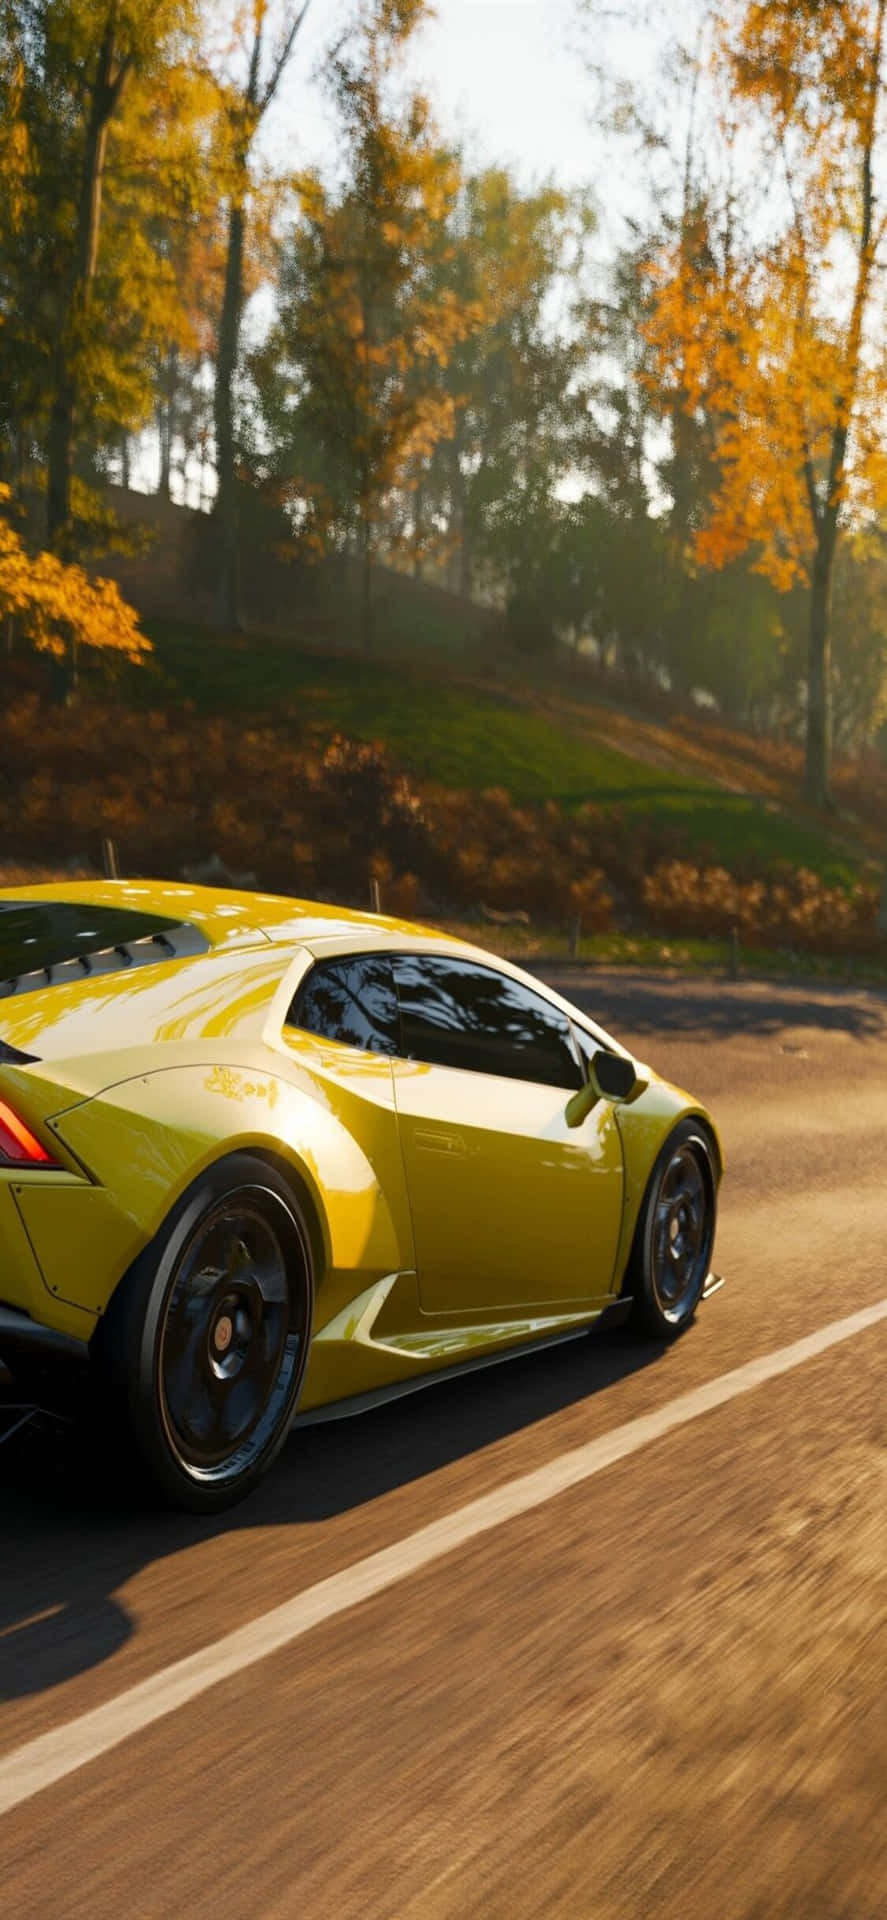 Golden Lamborghini Huracan iPhone X Forza Motorsport 7 Background